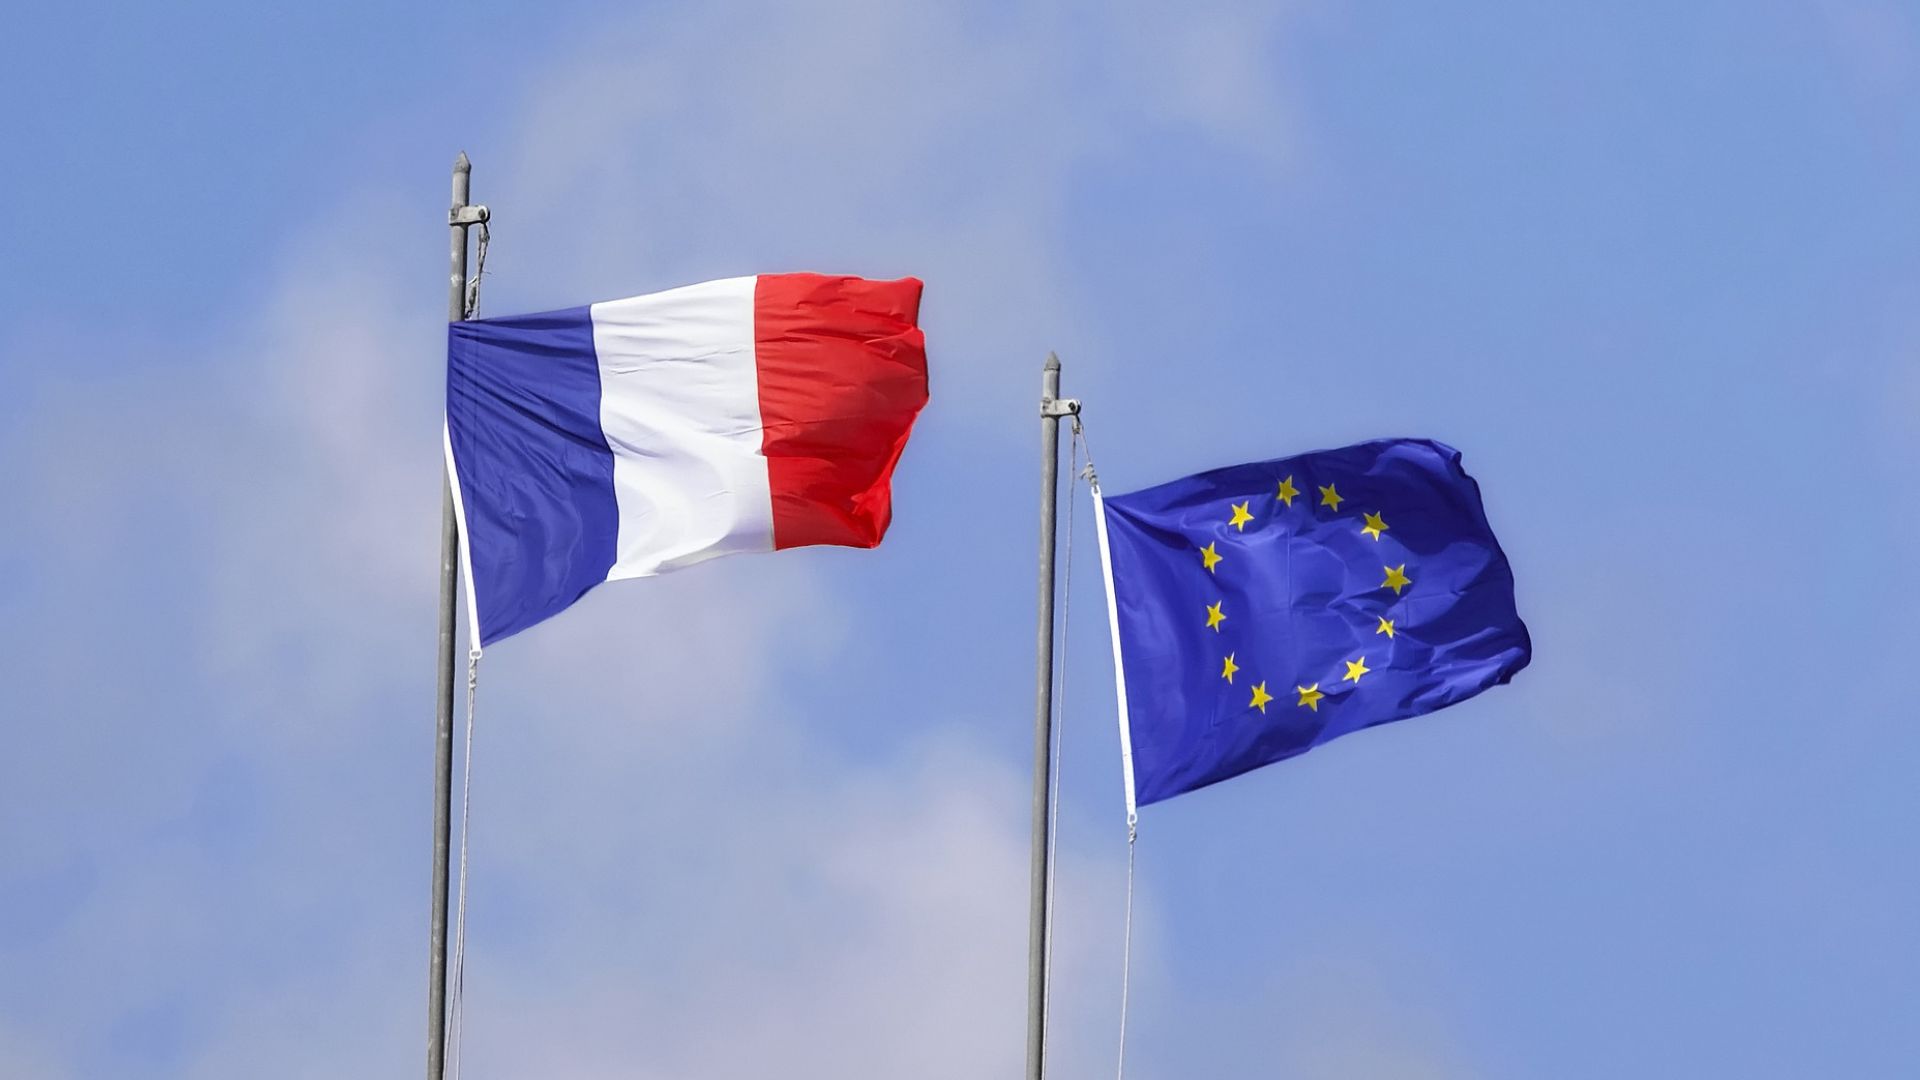  Dernière chance pour la Présidence française de faire avancer l’action climatique en Europe